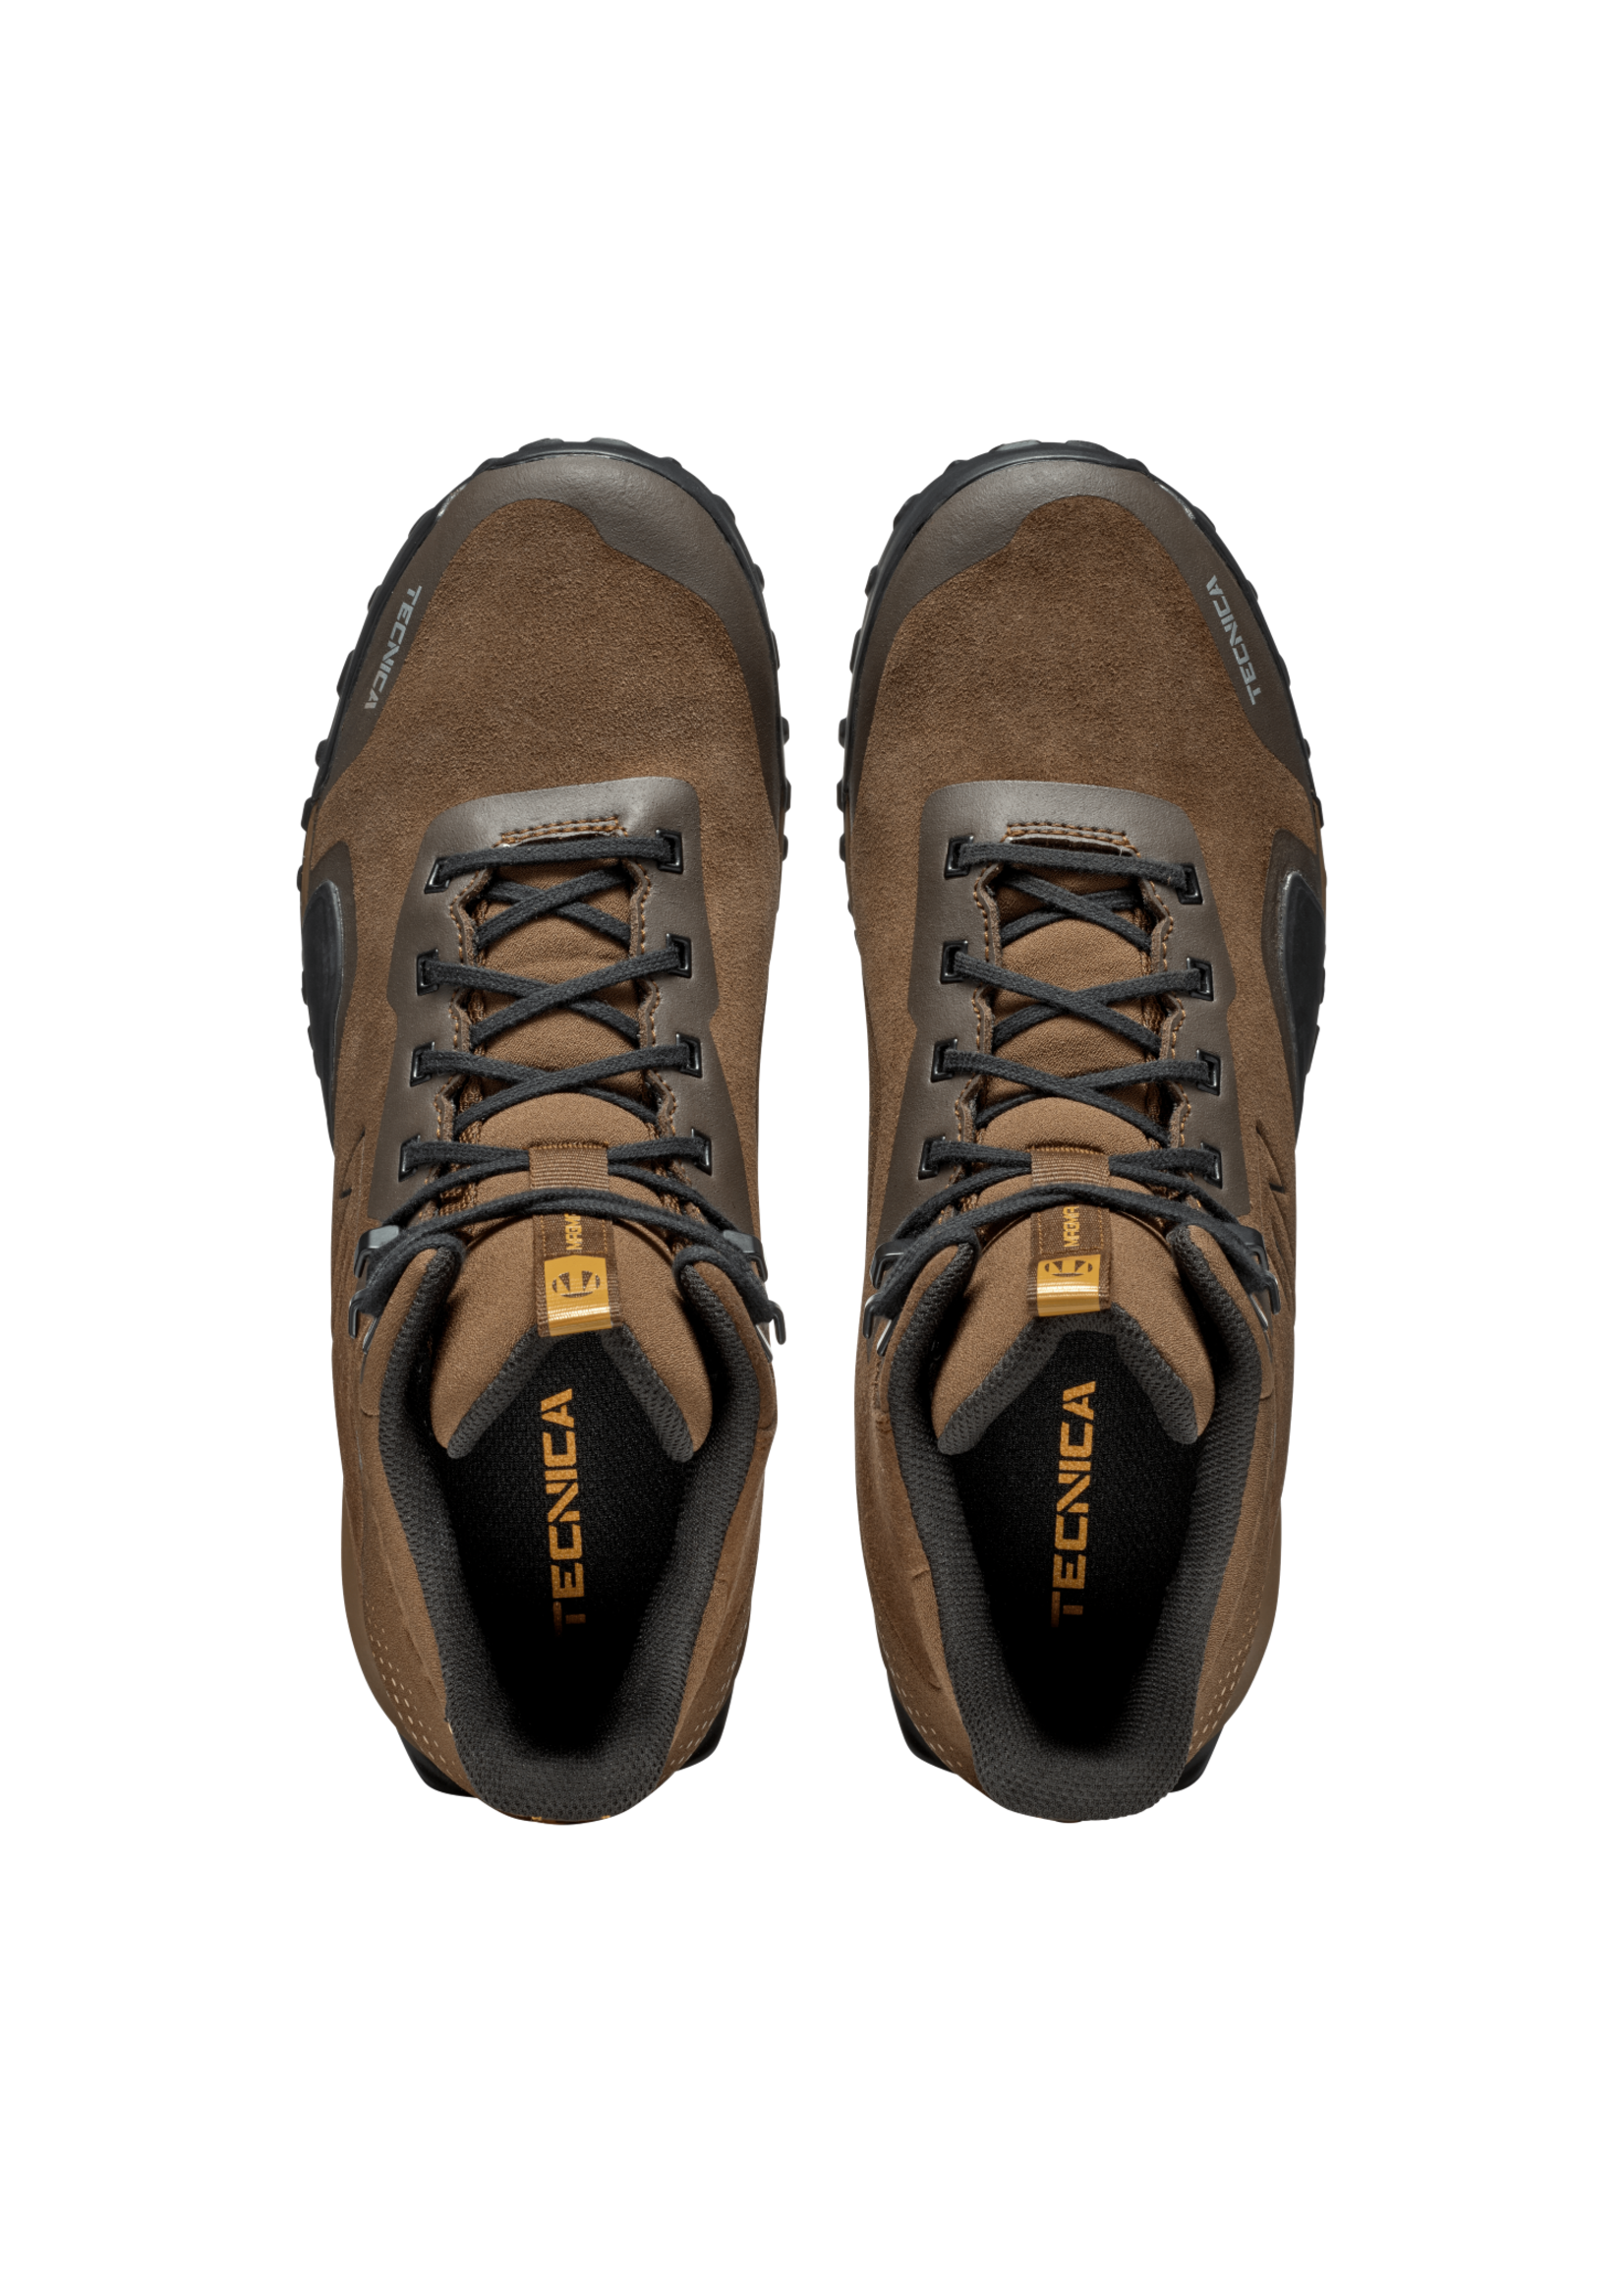 Tecnica Tecnica Magma 2.0 Mid GTX Hiking Boots - Men